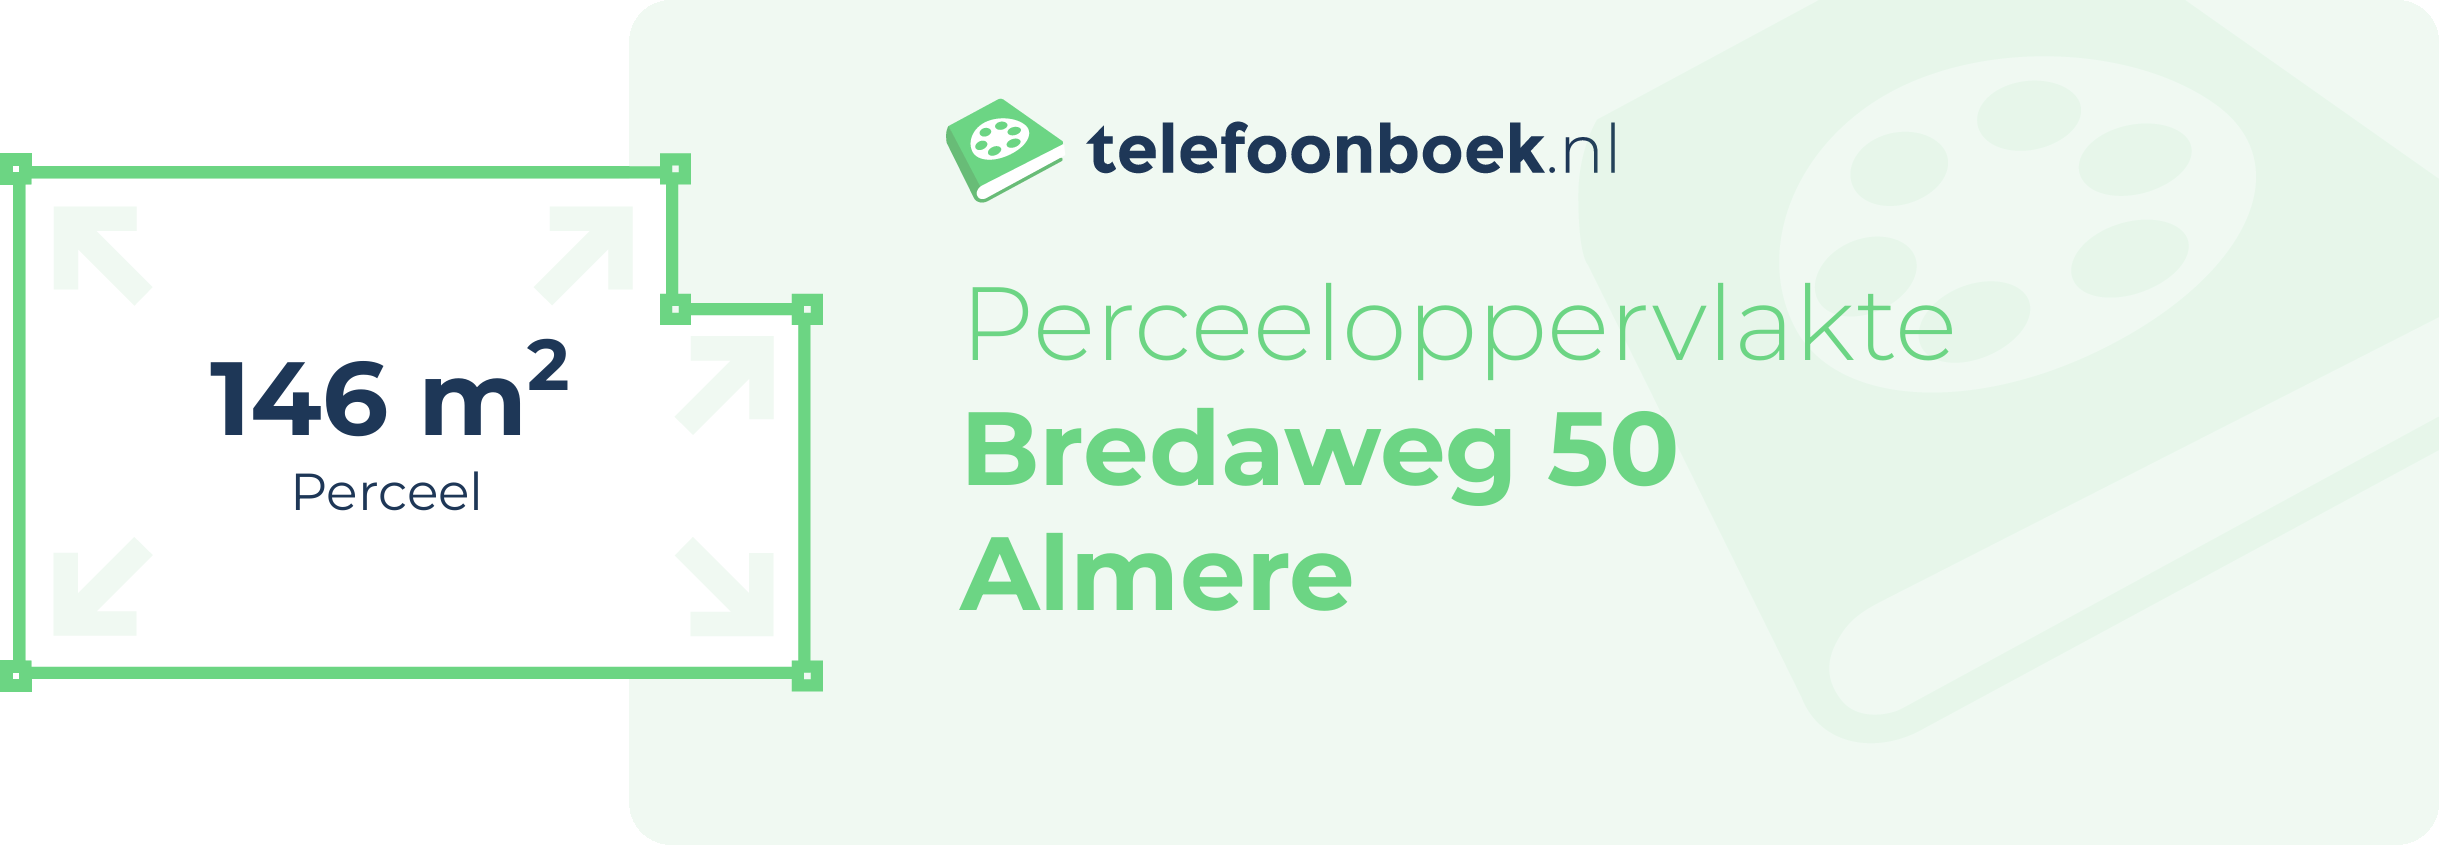 Perceeloppervlakte Bredaweg 50 Almere